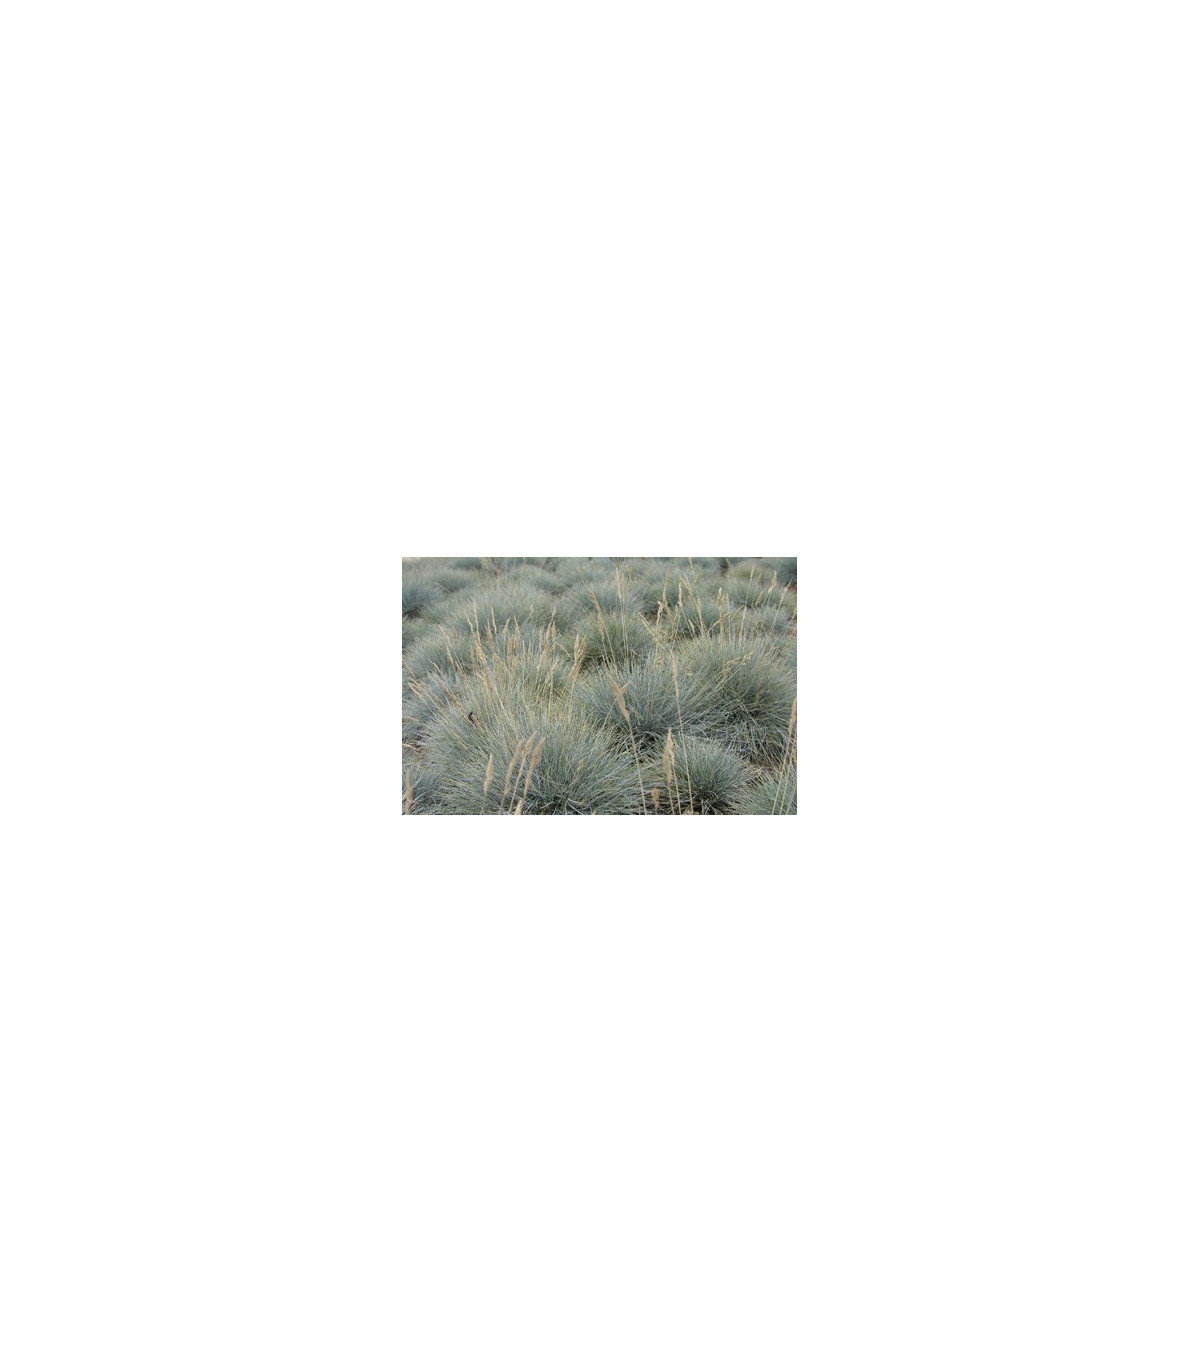 Okrasná tráva - Kostrava coxii - Festuca coxii - semená - 5 ks